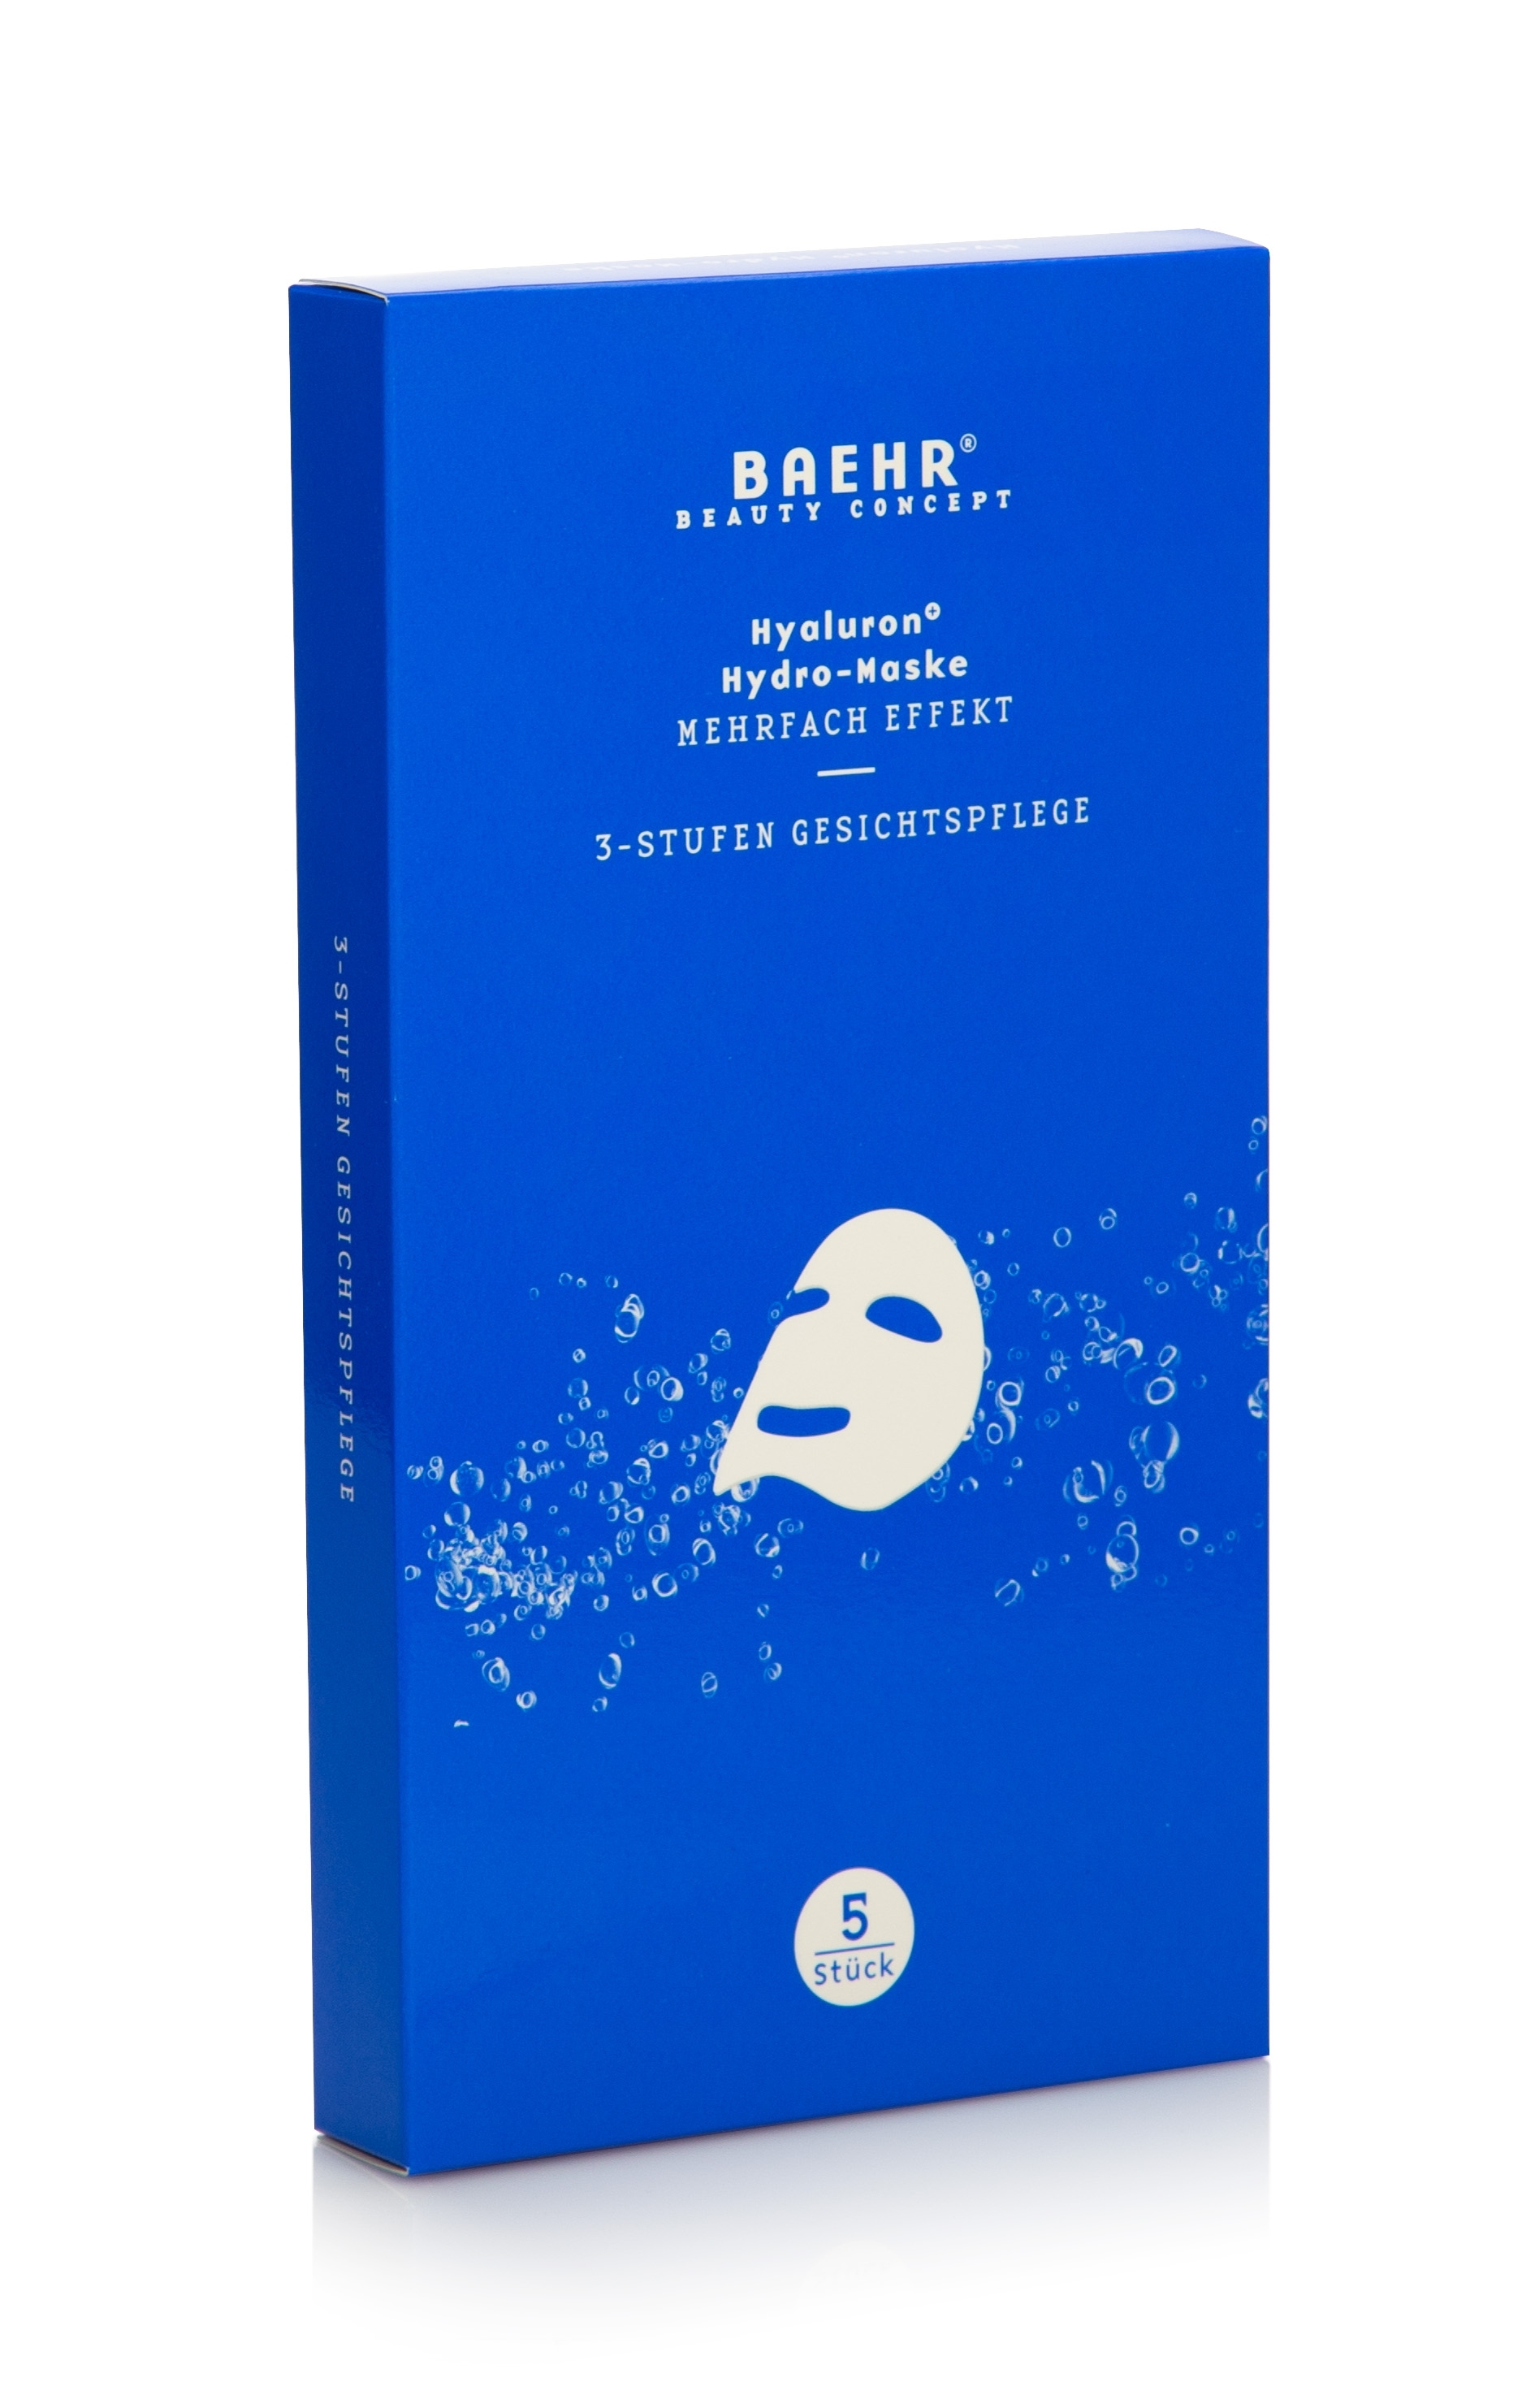 BAEHR Hyaluron+ - Vliesmaske, 3-Stufen Gesichtspflege | 5 Stück 